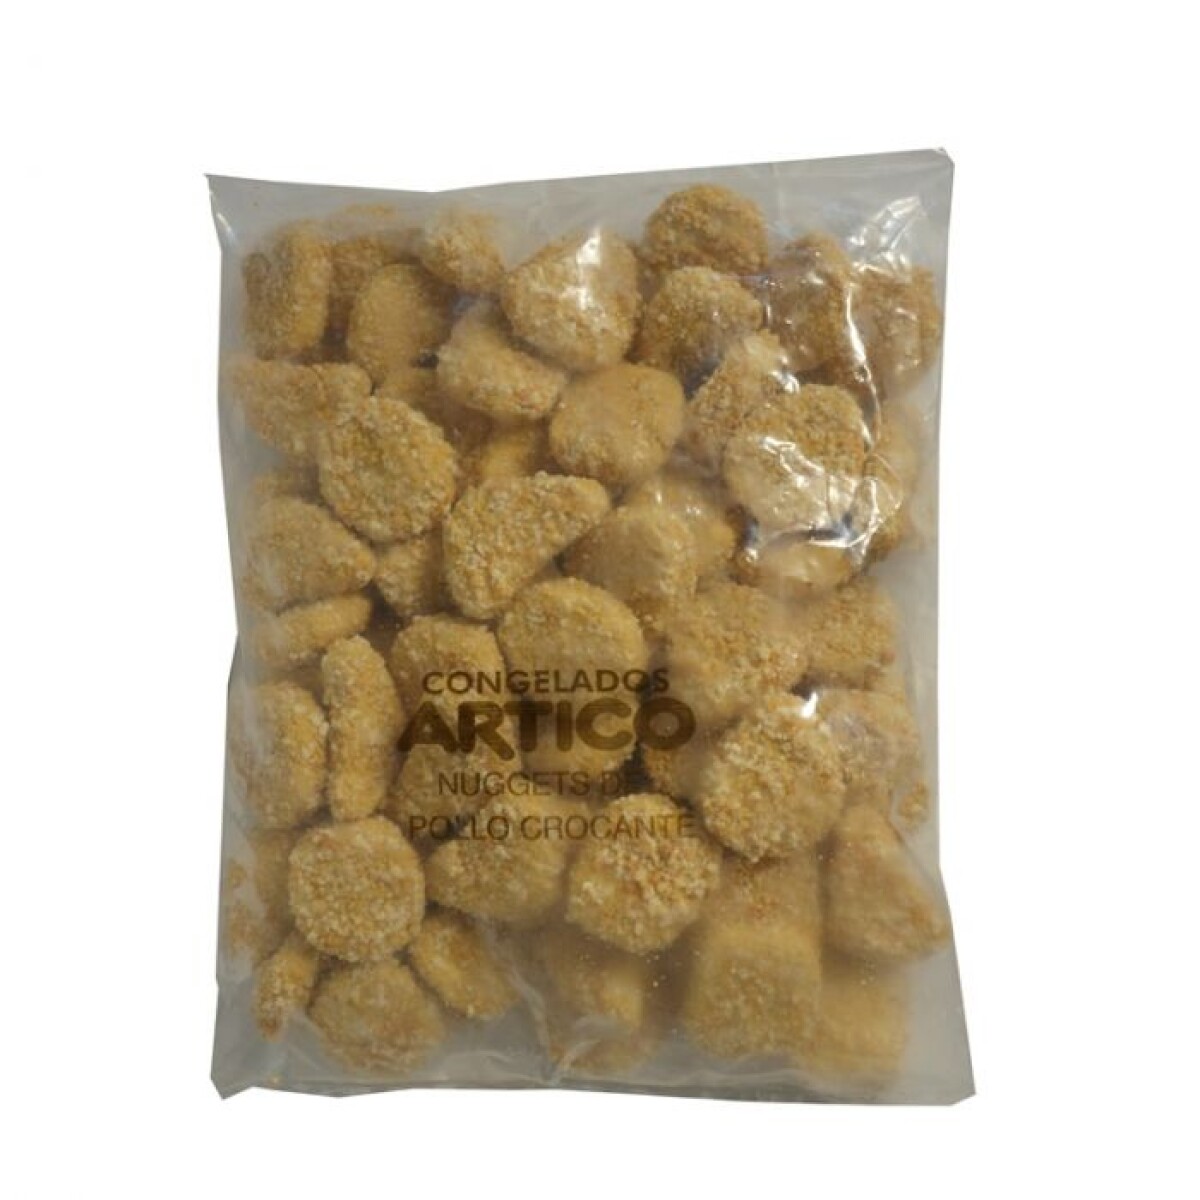 Nuggets de pollo Ártico - por kg 